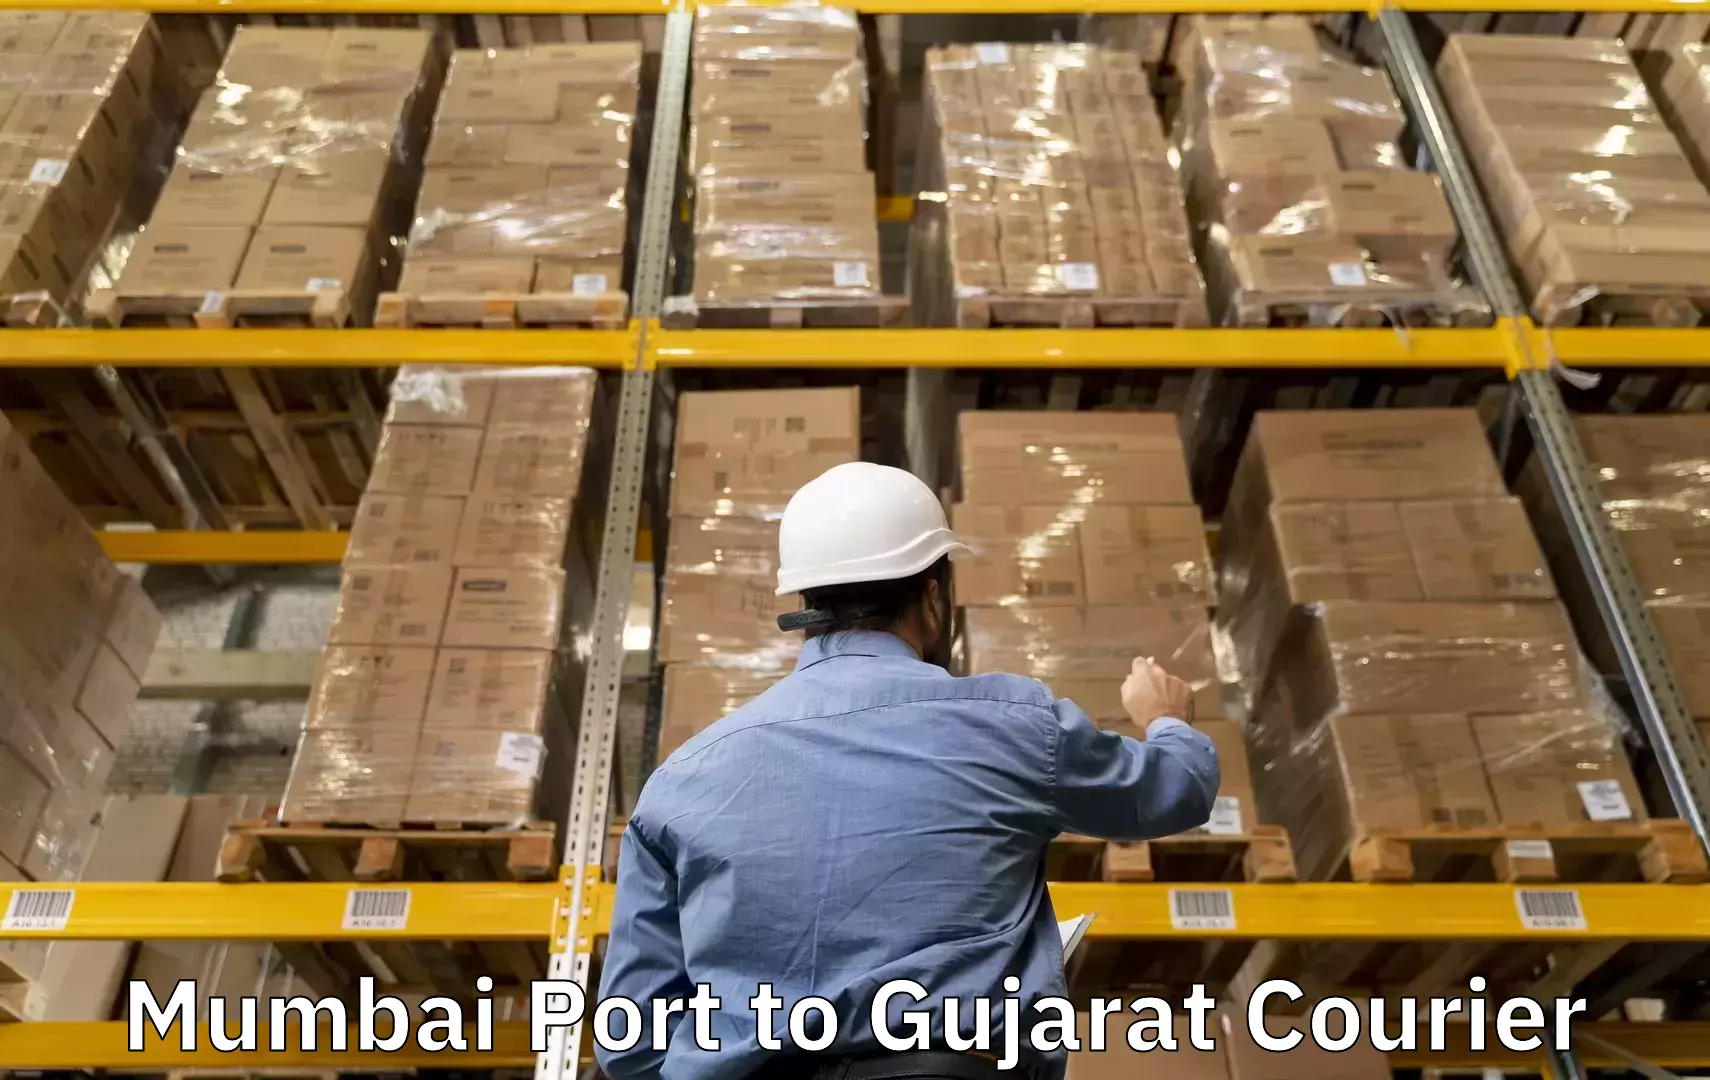 Luggage forwarding service Mumbai Port to Veraval